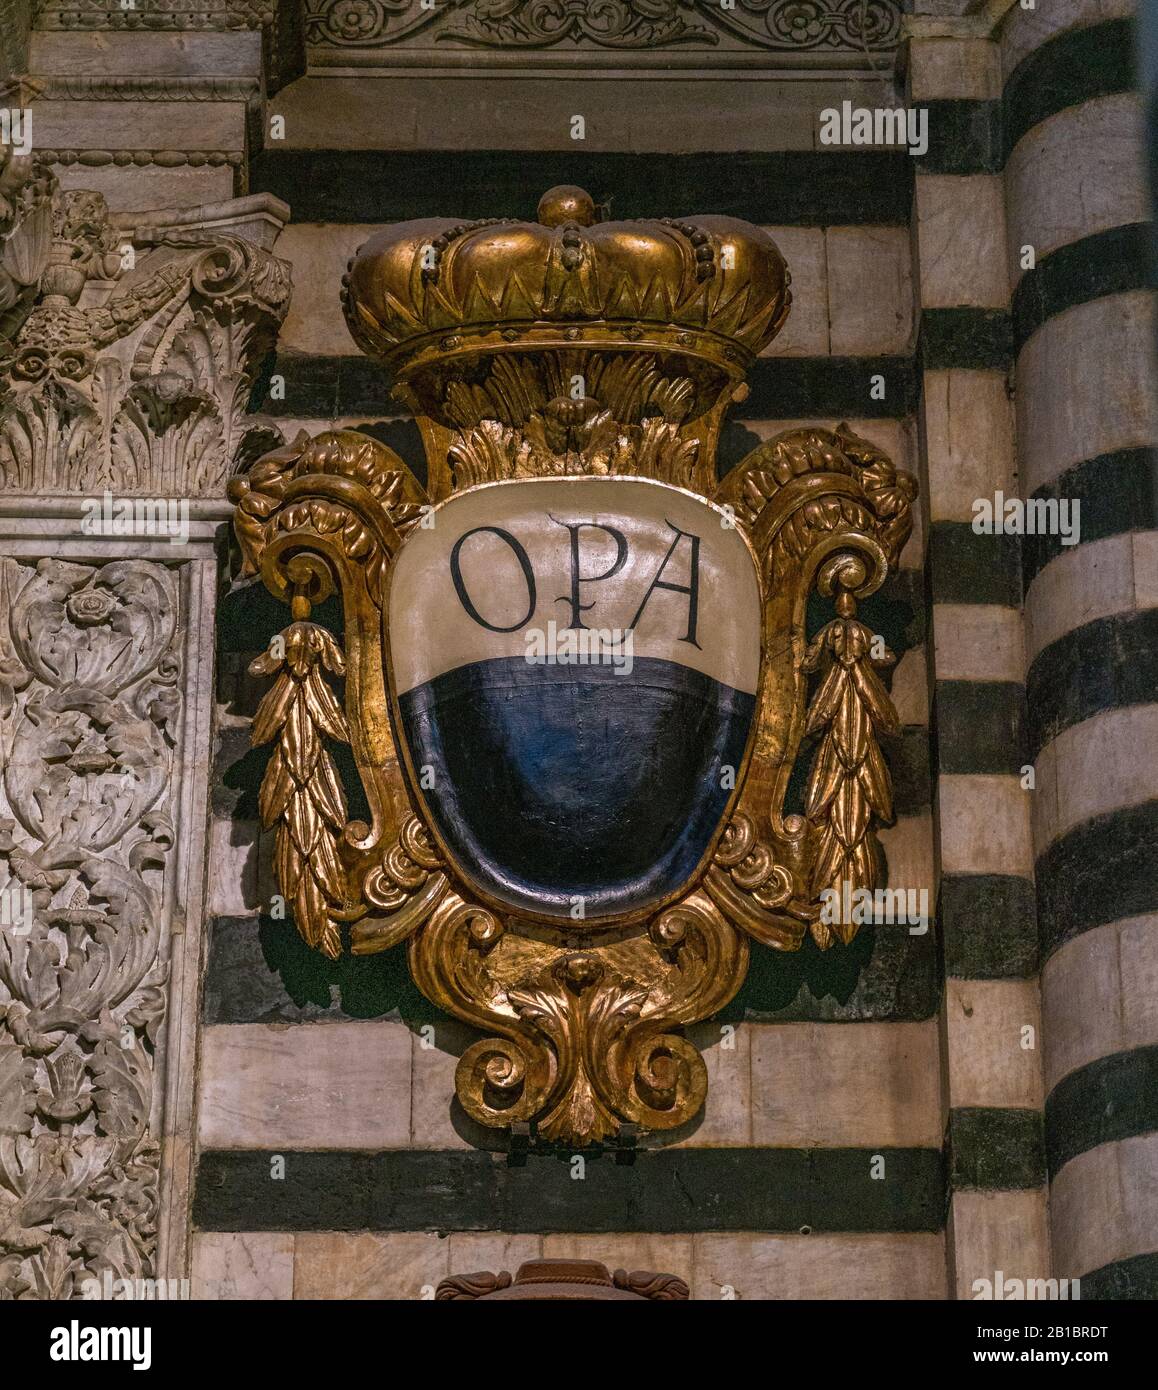 Stemma OPA nel Duomo di Siena, Toscana, Italia. Foto Stock